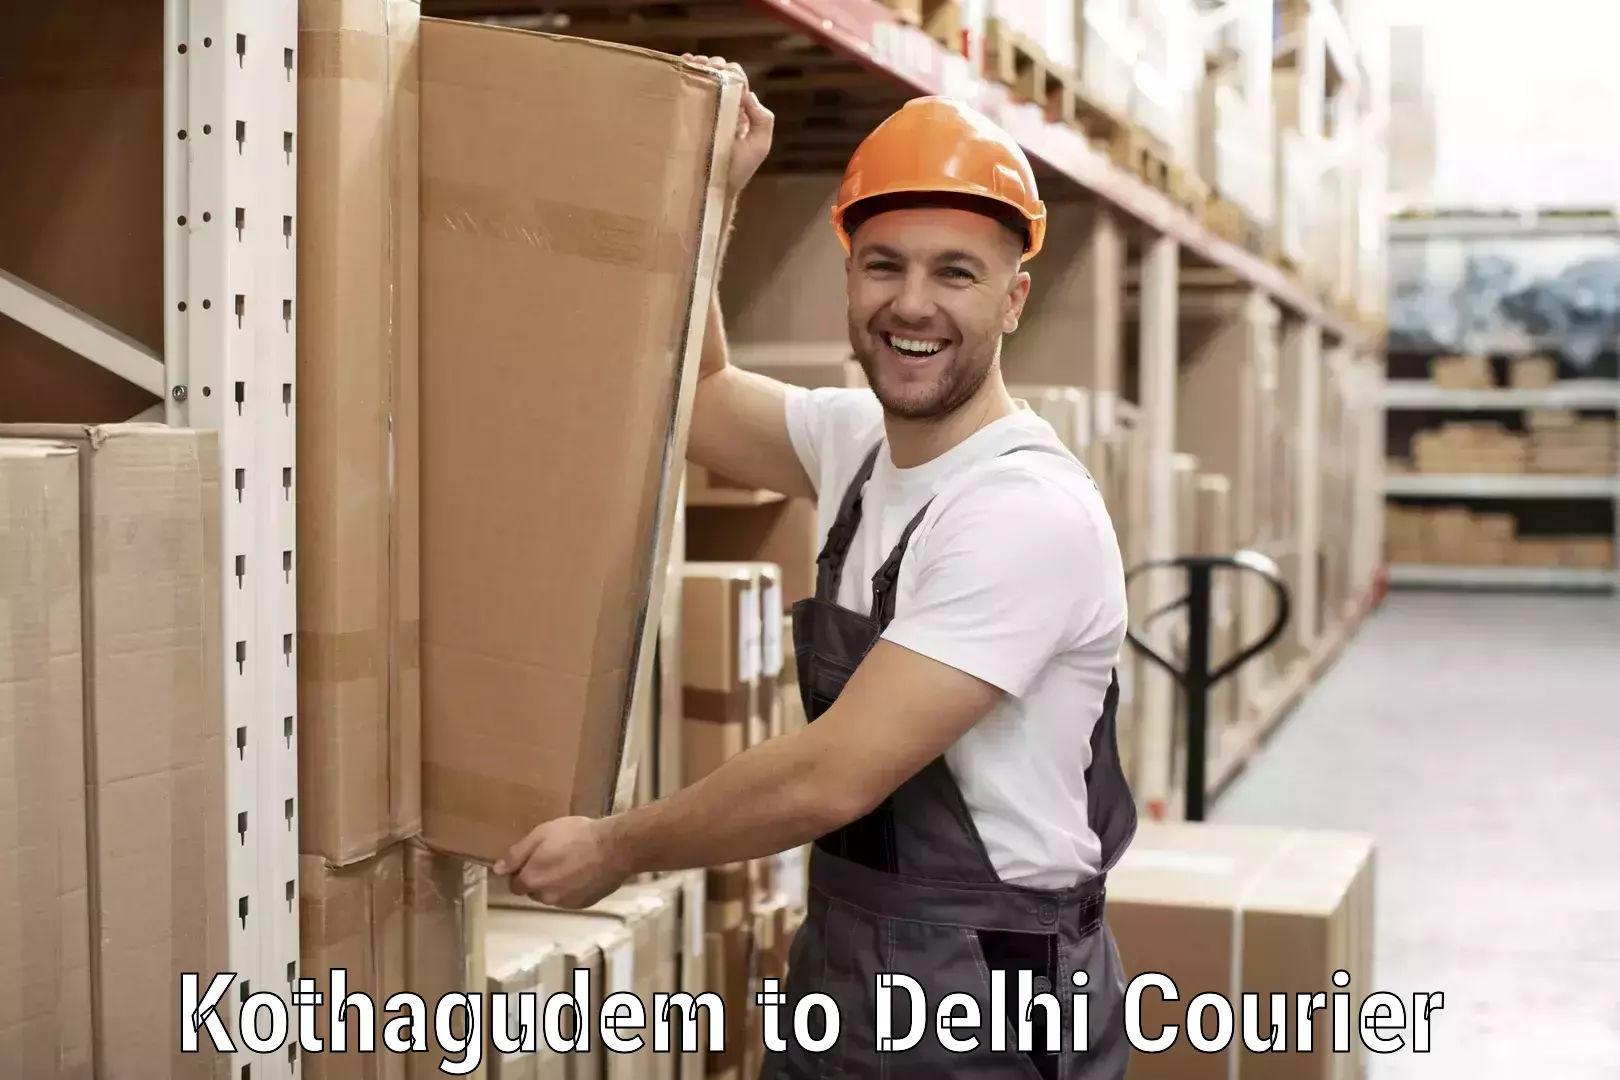 Courier service innovation Kothagudem to Jamia Hamdard New Delhi